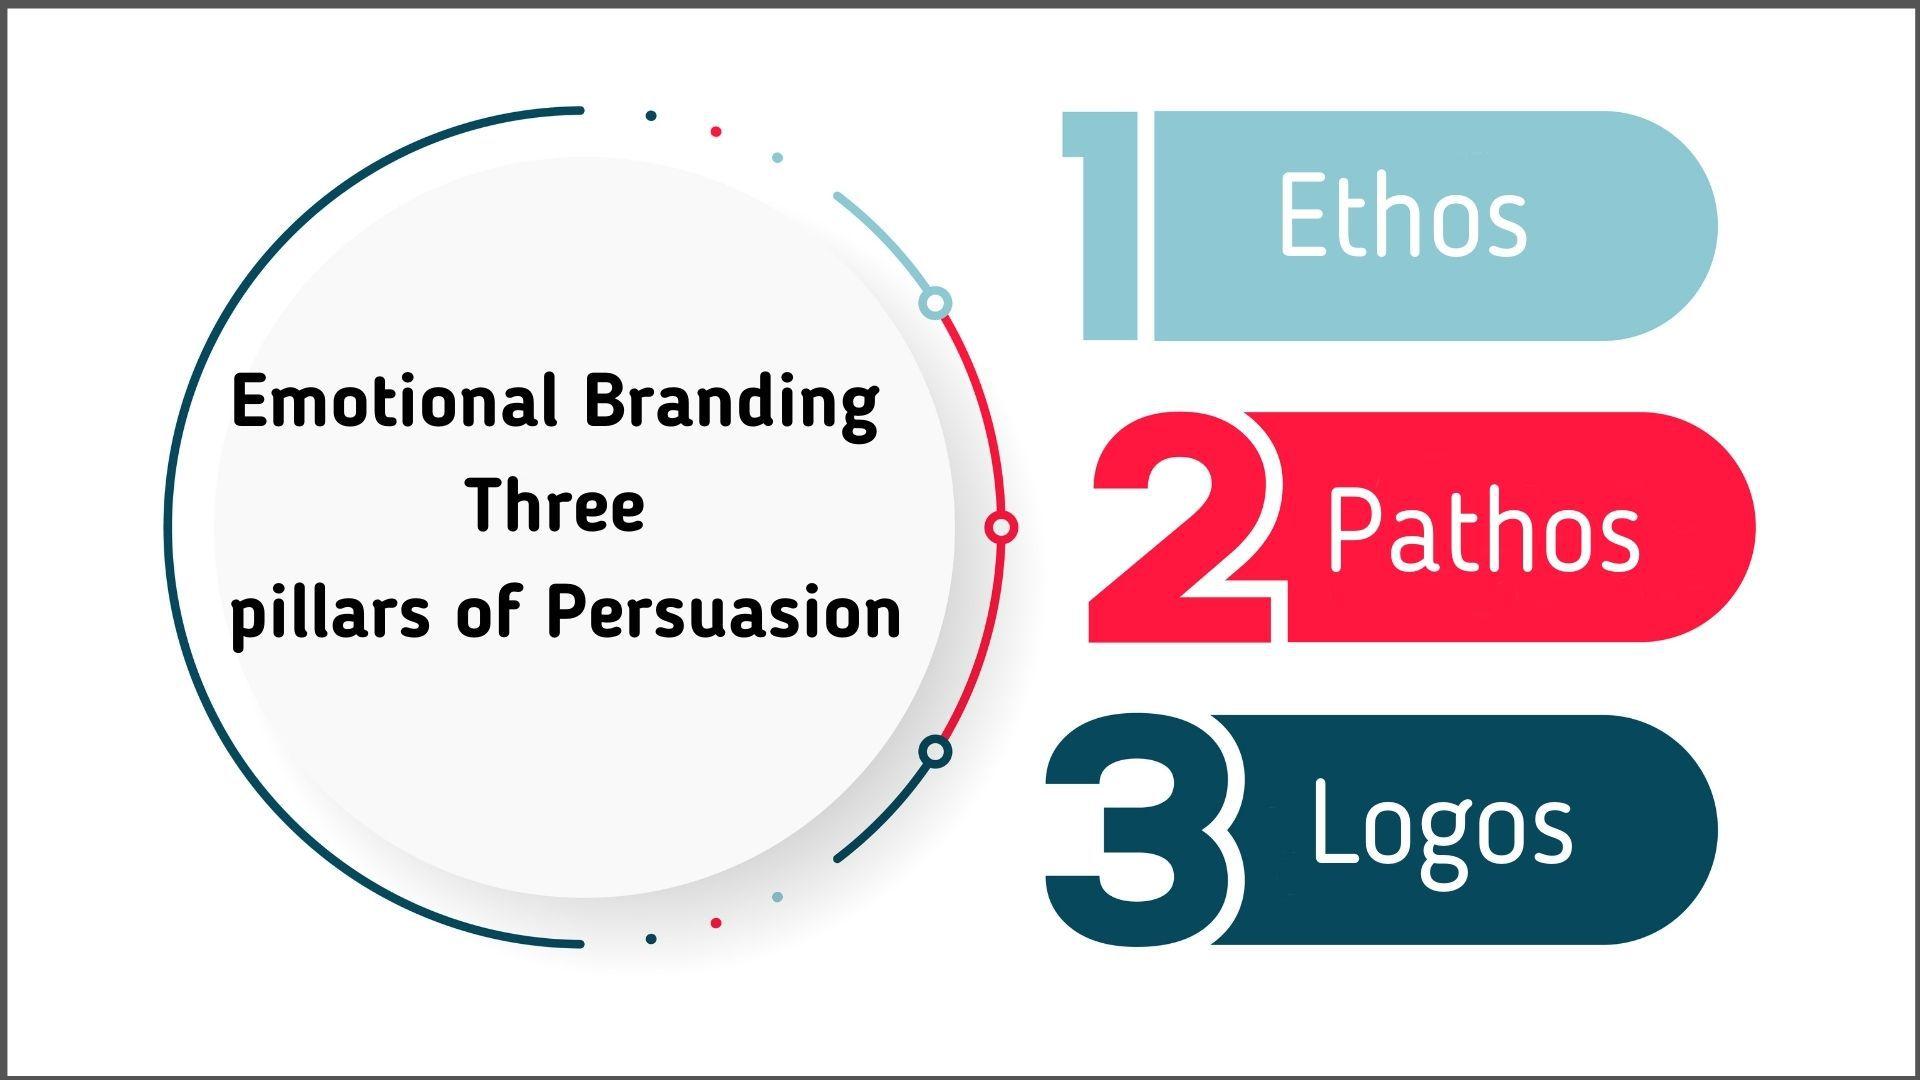 Ba kỹ thuật tiếp thị thuyết phục khách hàng của Aristotle bao gồm: ethos (sự tin tưởng), pathos (sự cảm thông) và logos (lập luận logic) (Ảnh Internet)